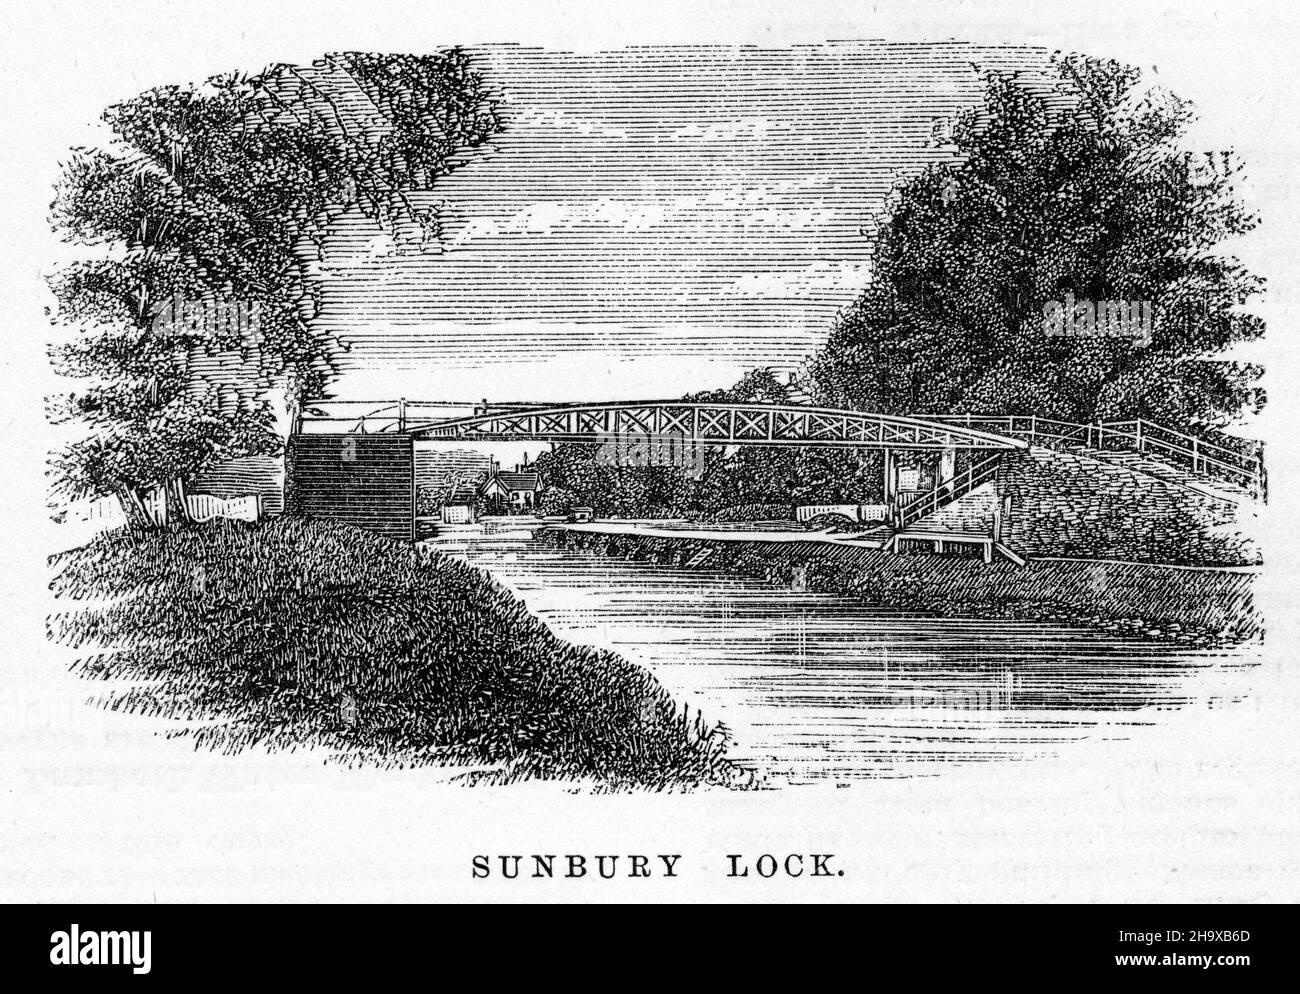 Gravure de Sunbury Lock, Angleterre, d'un guide de pêche pour la Tamise, vers 1880 Banque D'Images